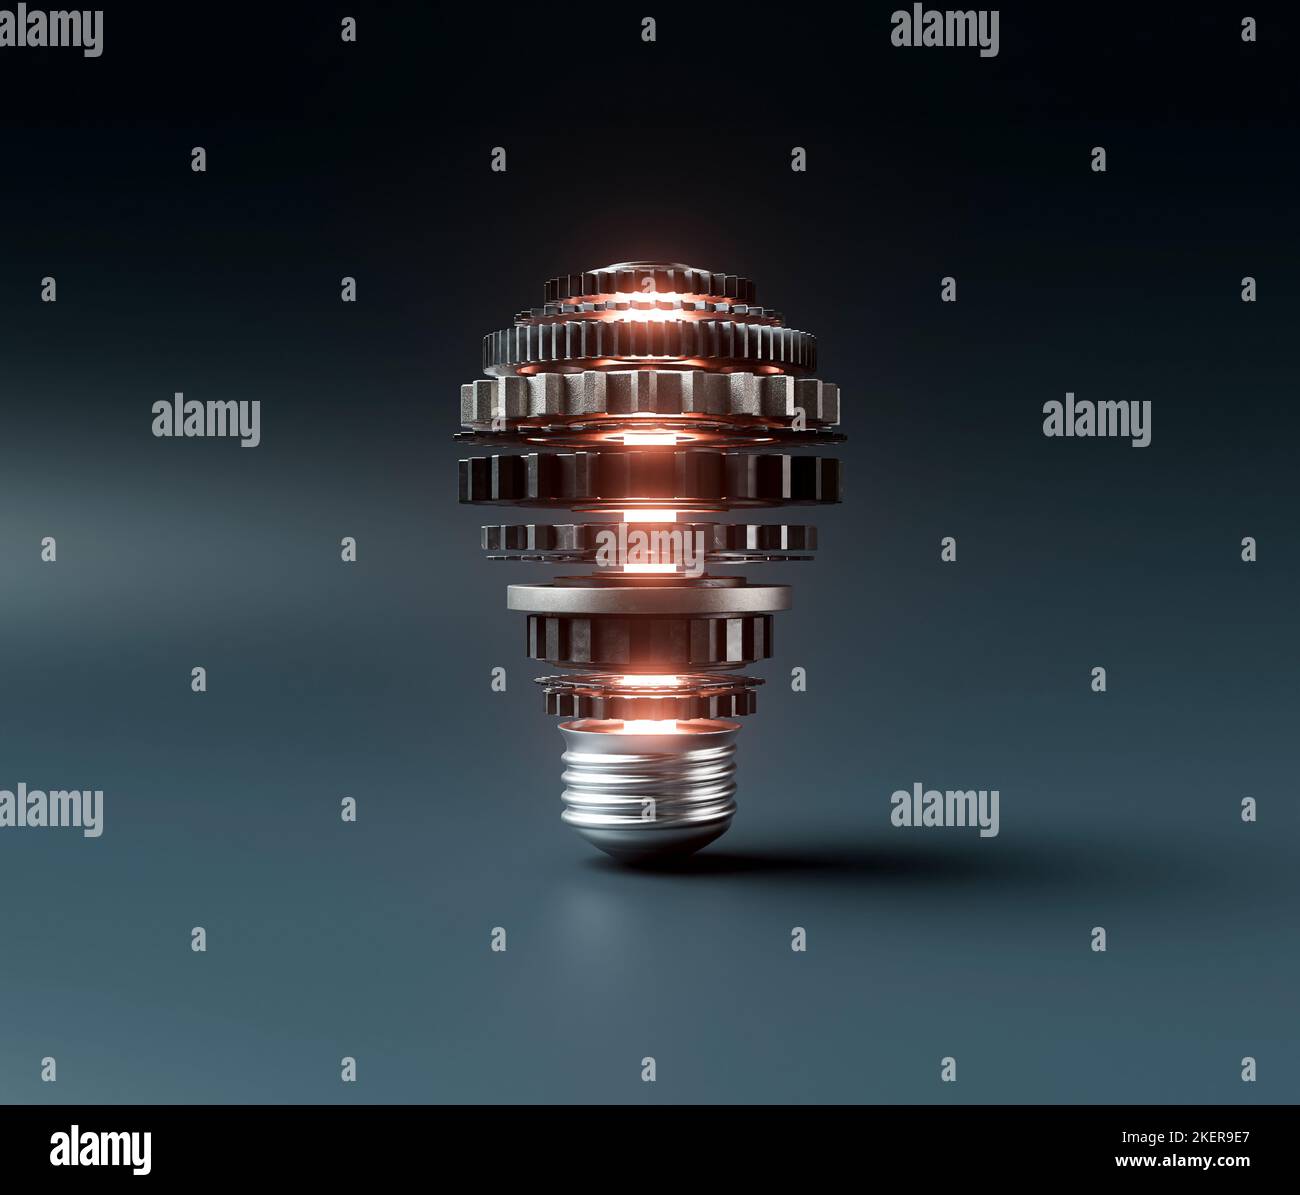 Ein Glühbirnen-Konzept aus Zahnrädern aus Metall und ein zentrales neon-beleuchtetes Lgiht, das Fantasie auf einem dunklen dramatischen Hintergrund symbolisiert - 3D Render Stockfoto